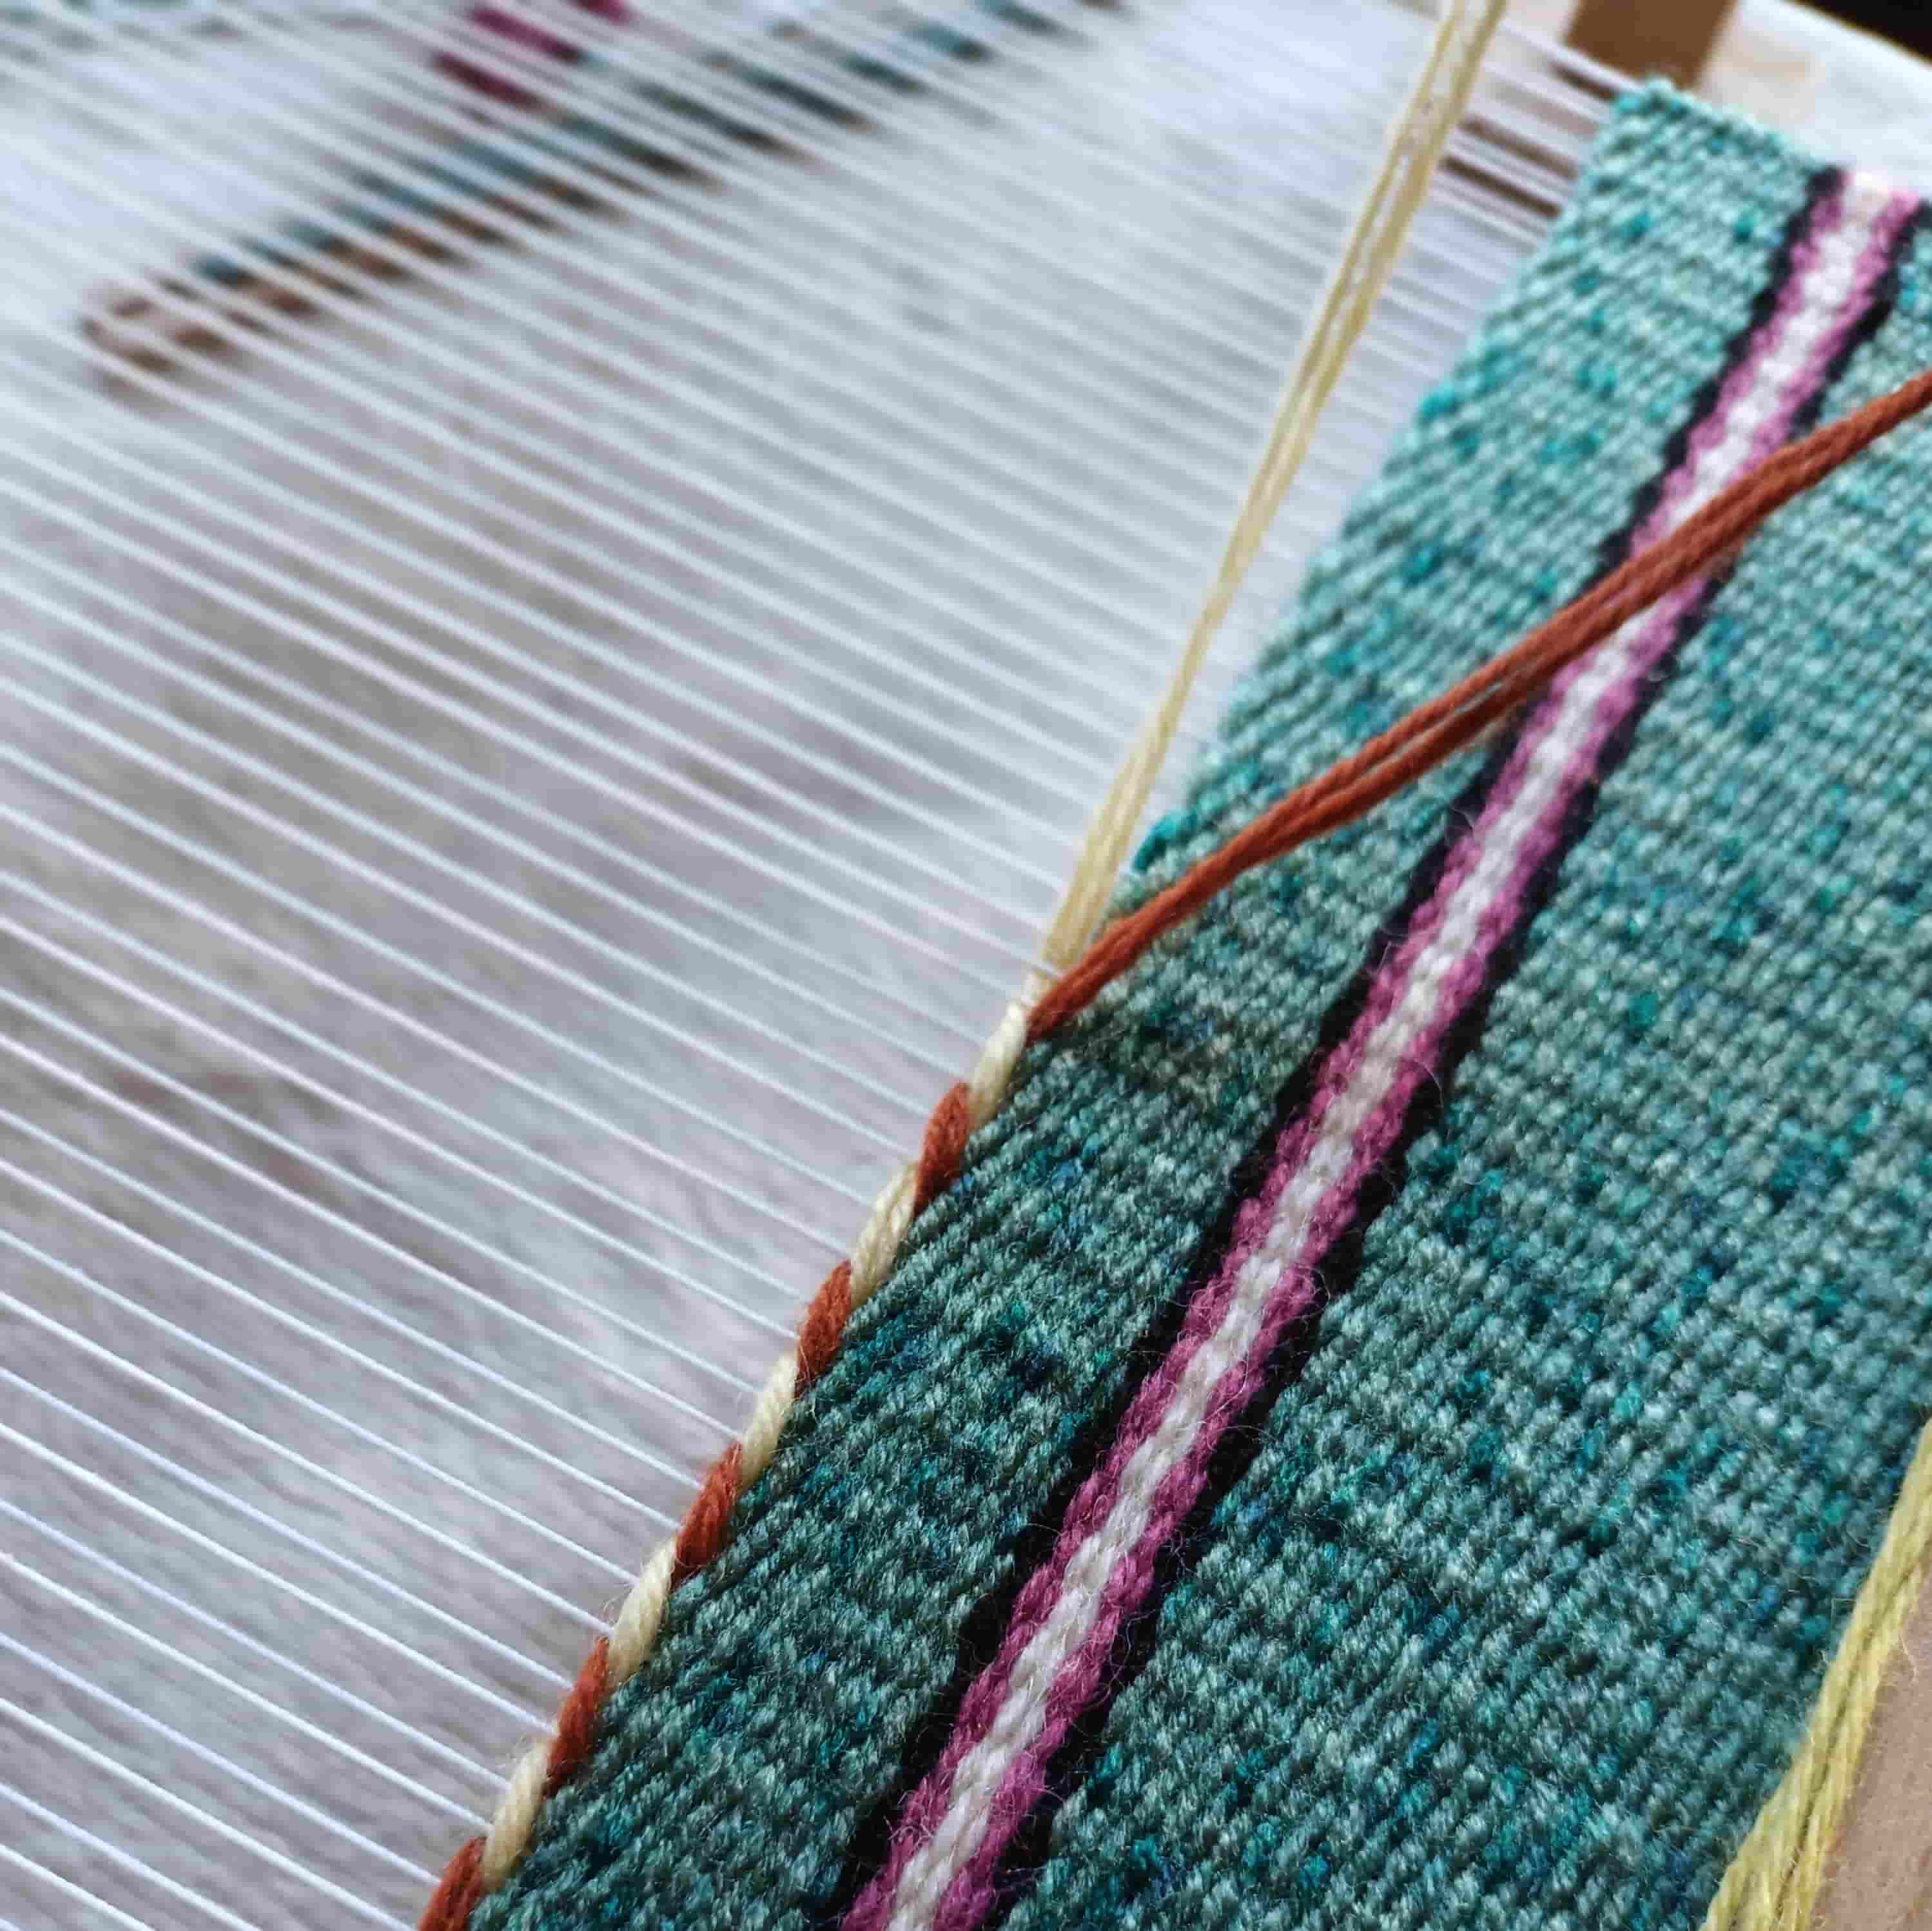 Réalisation d’un cordage bicolore sur métier à peigne envergeur - chaine en coton et trames en laine & acrylique